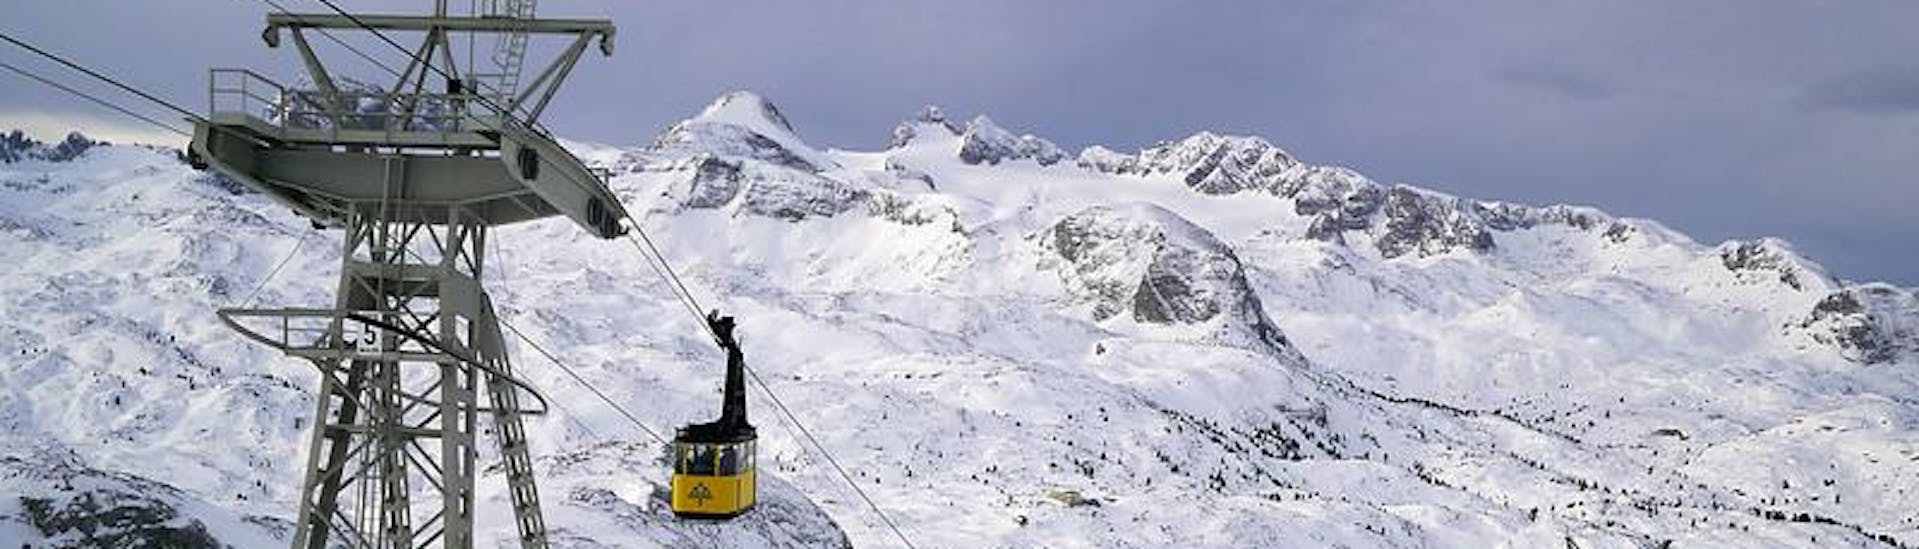 Adultes et enfants skiant dans la station de ski de Dachstein.